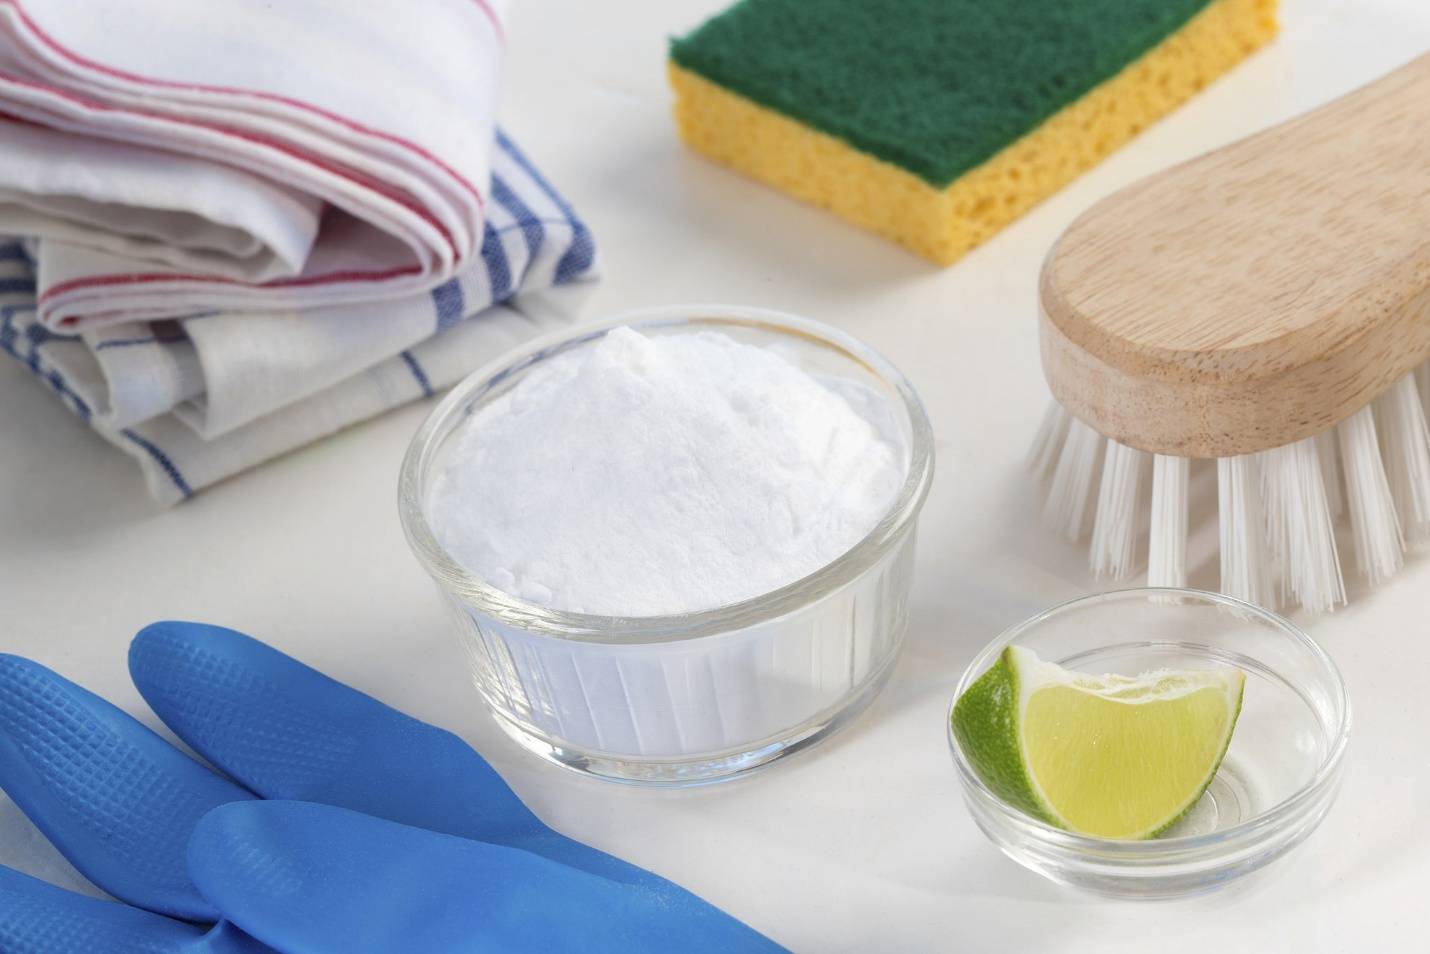 Солевой раствор для промывания носа в домашних условиях, практические советы